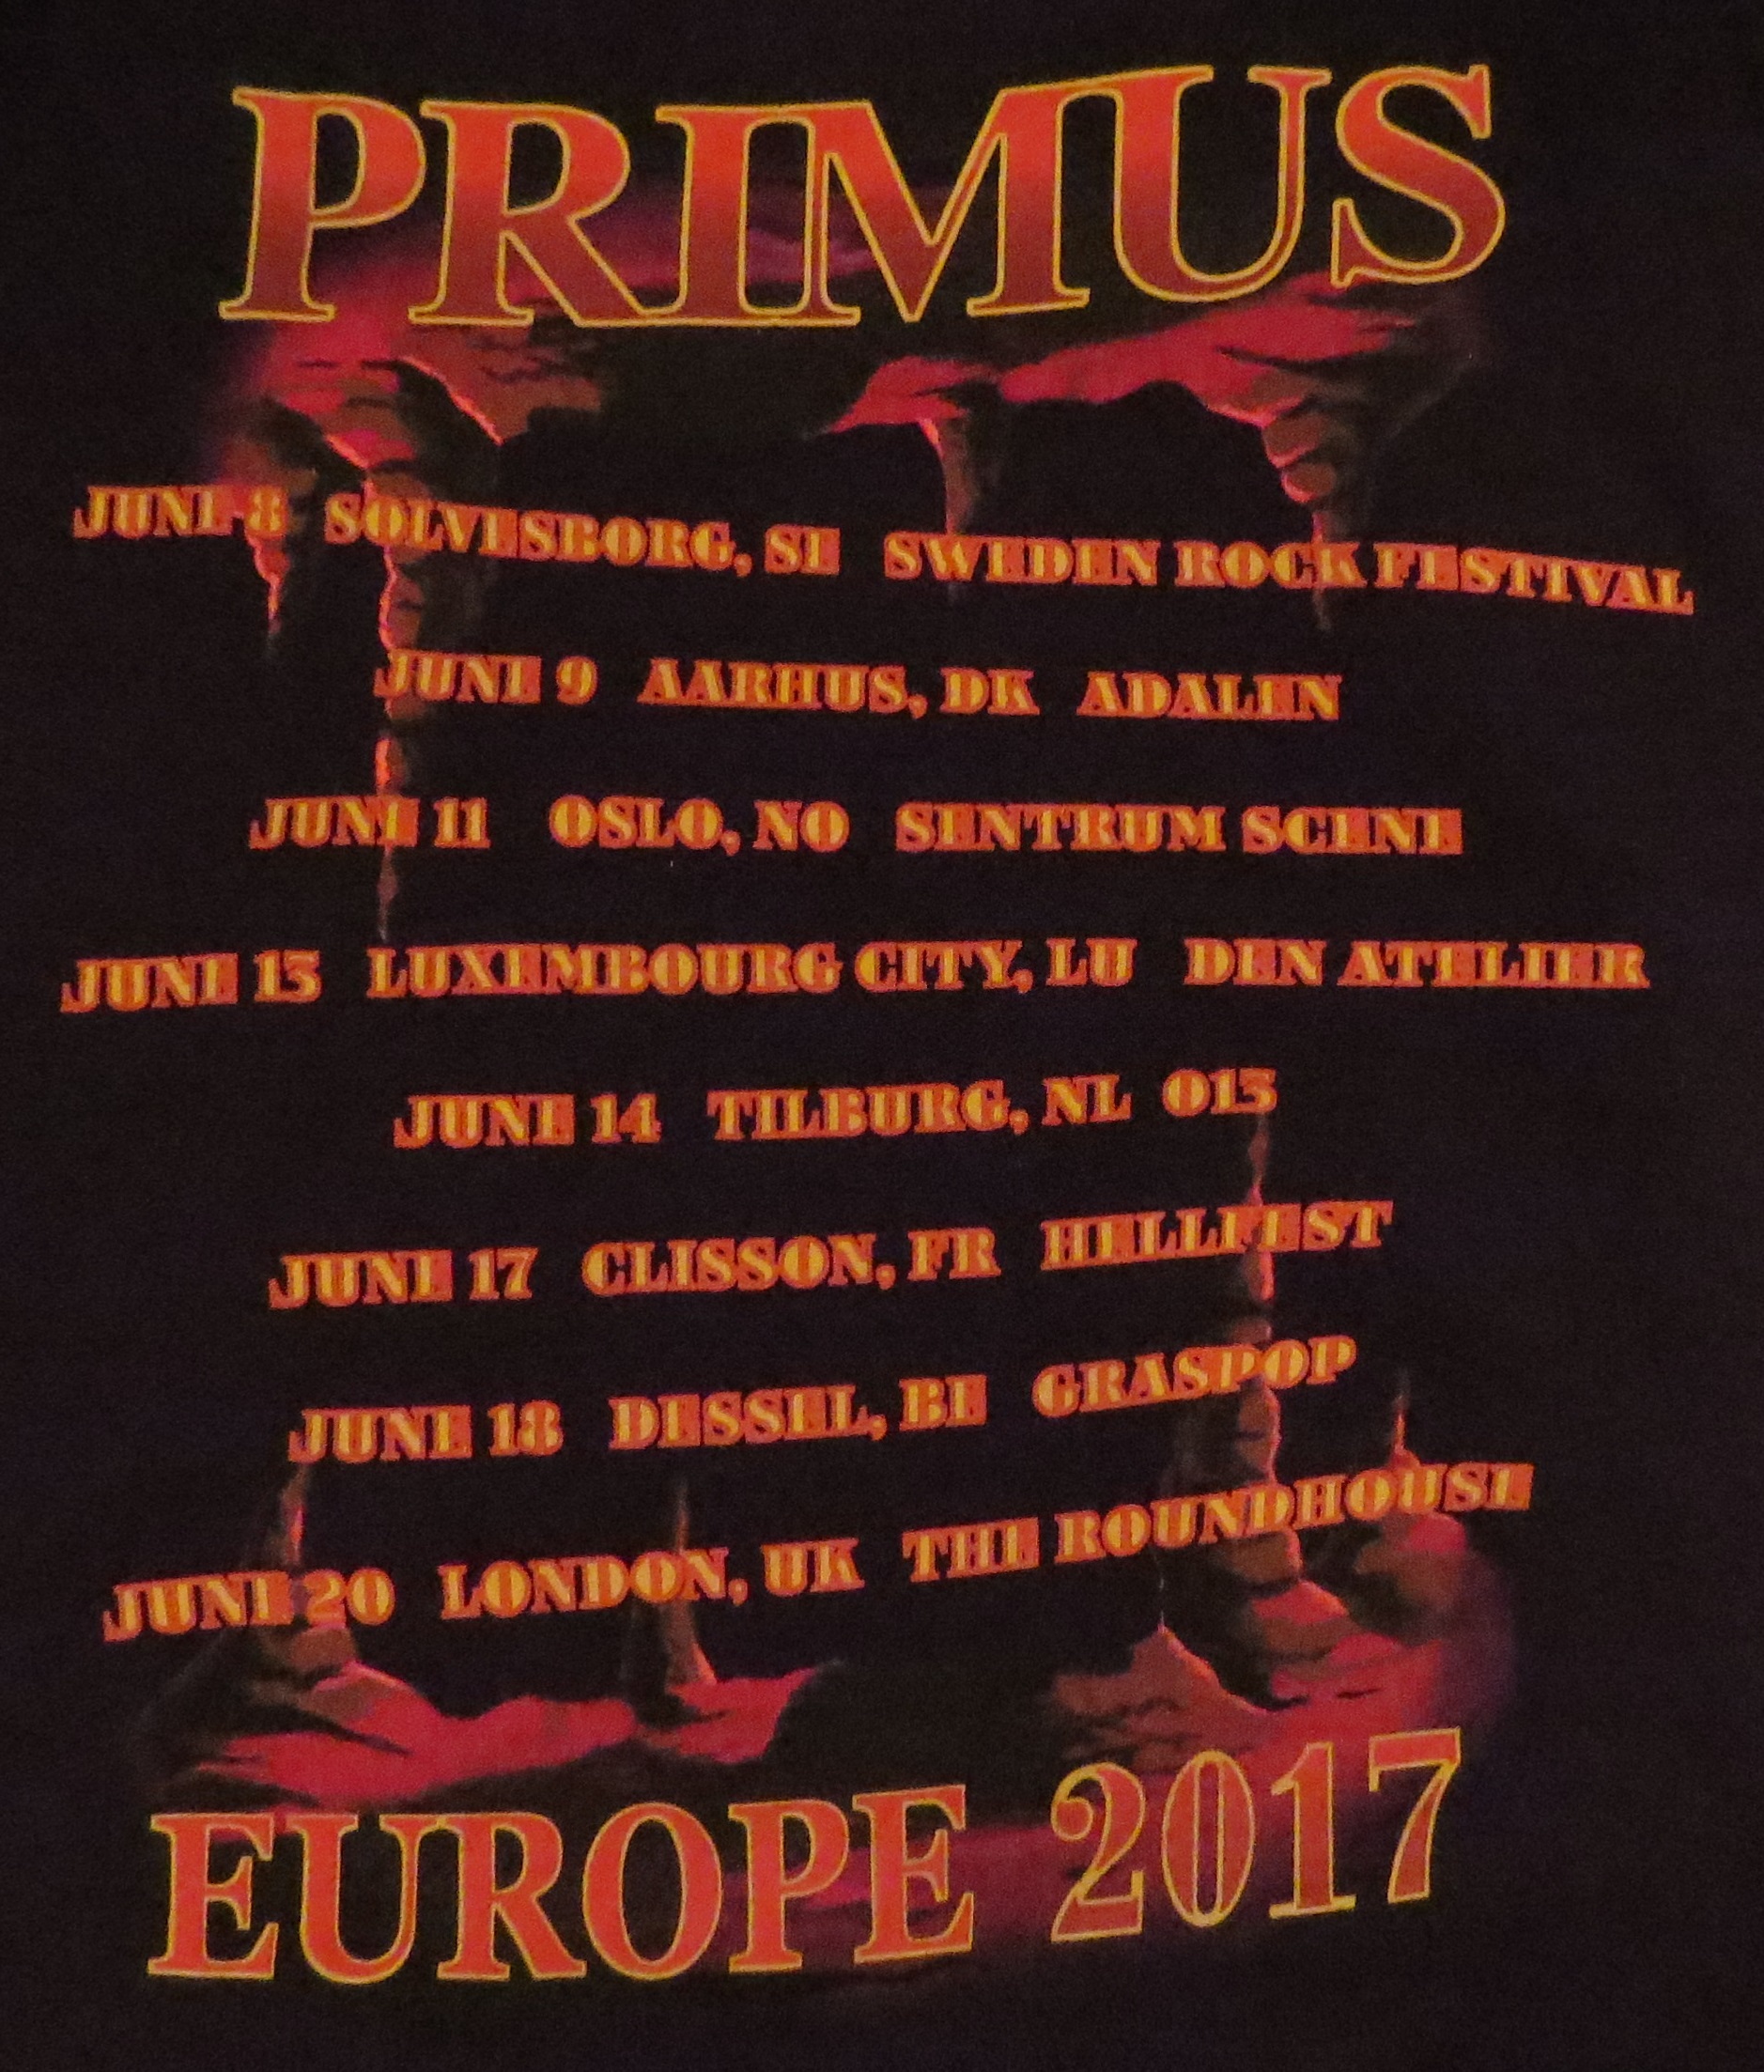 Primus2017-06-20TheRoundhouseLondonUK (9).jpg